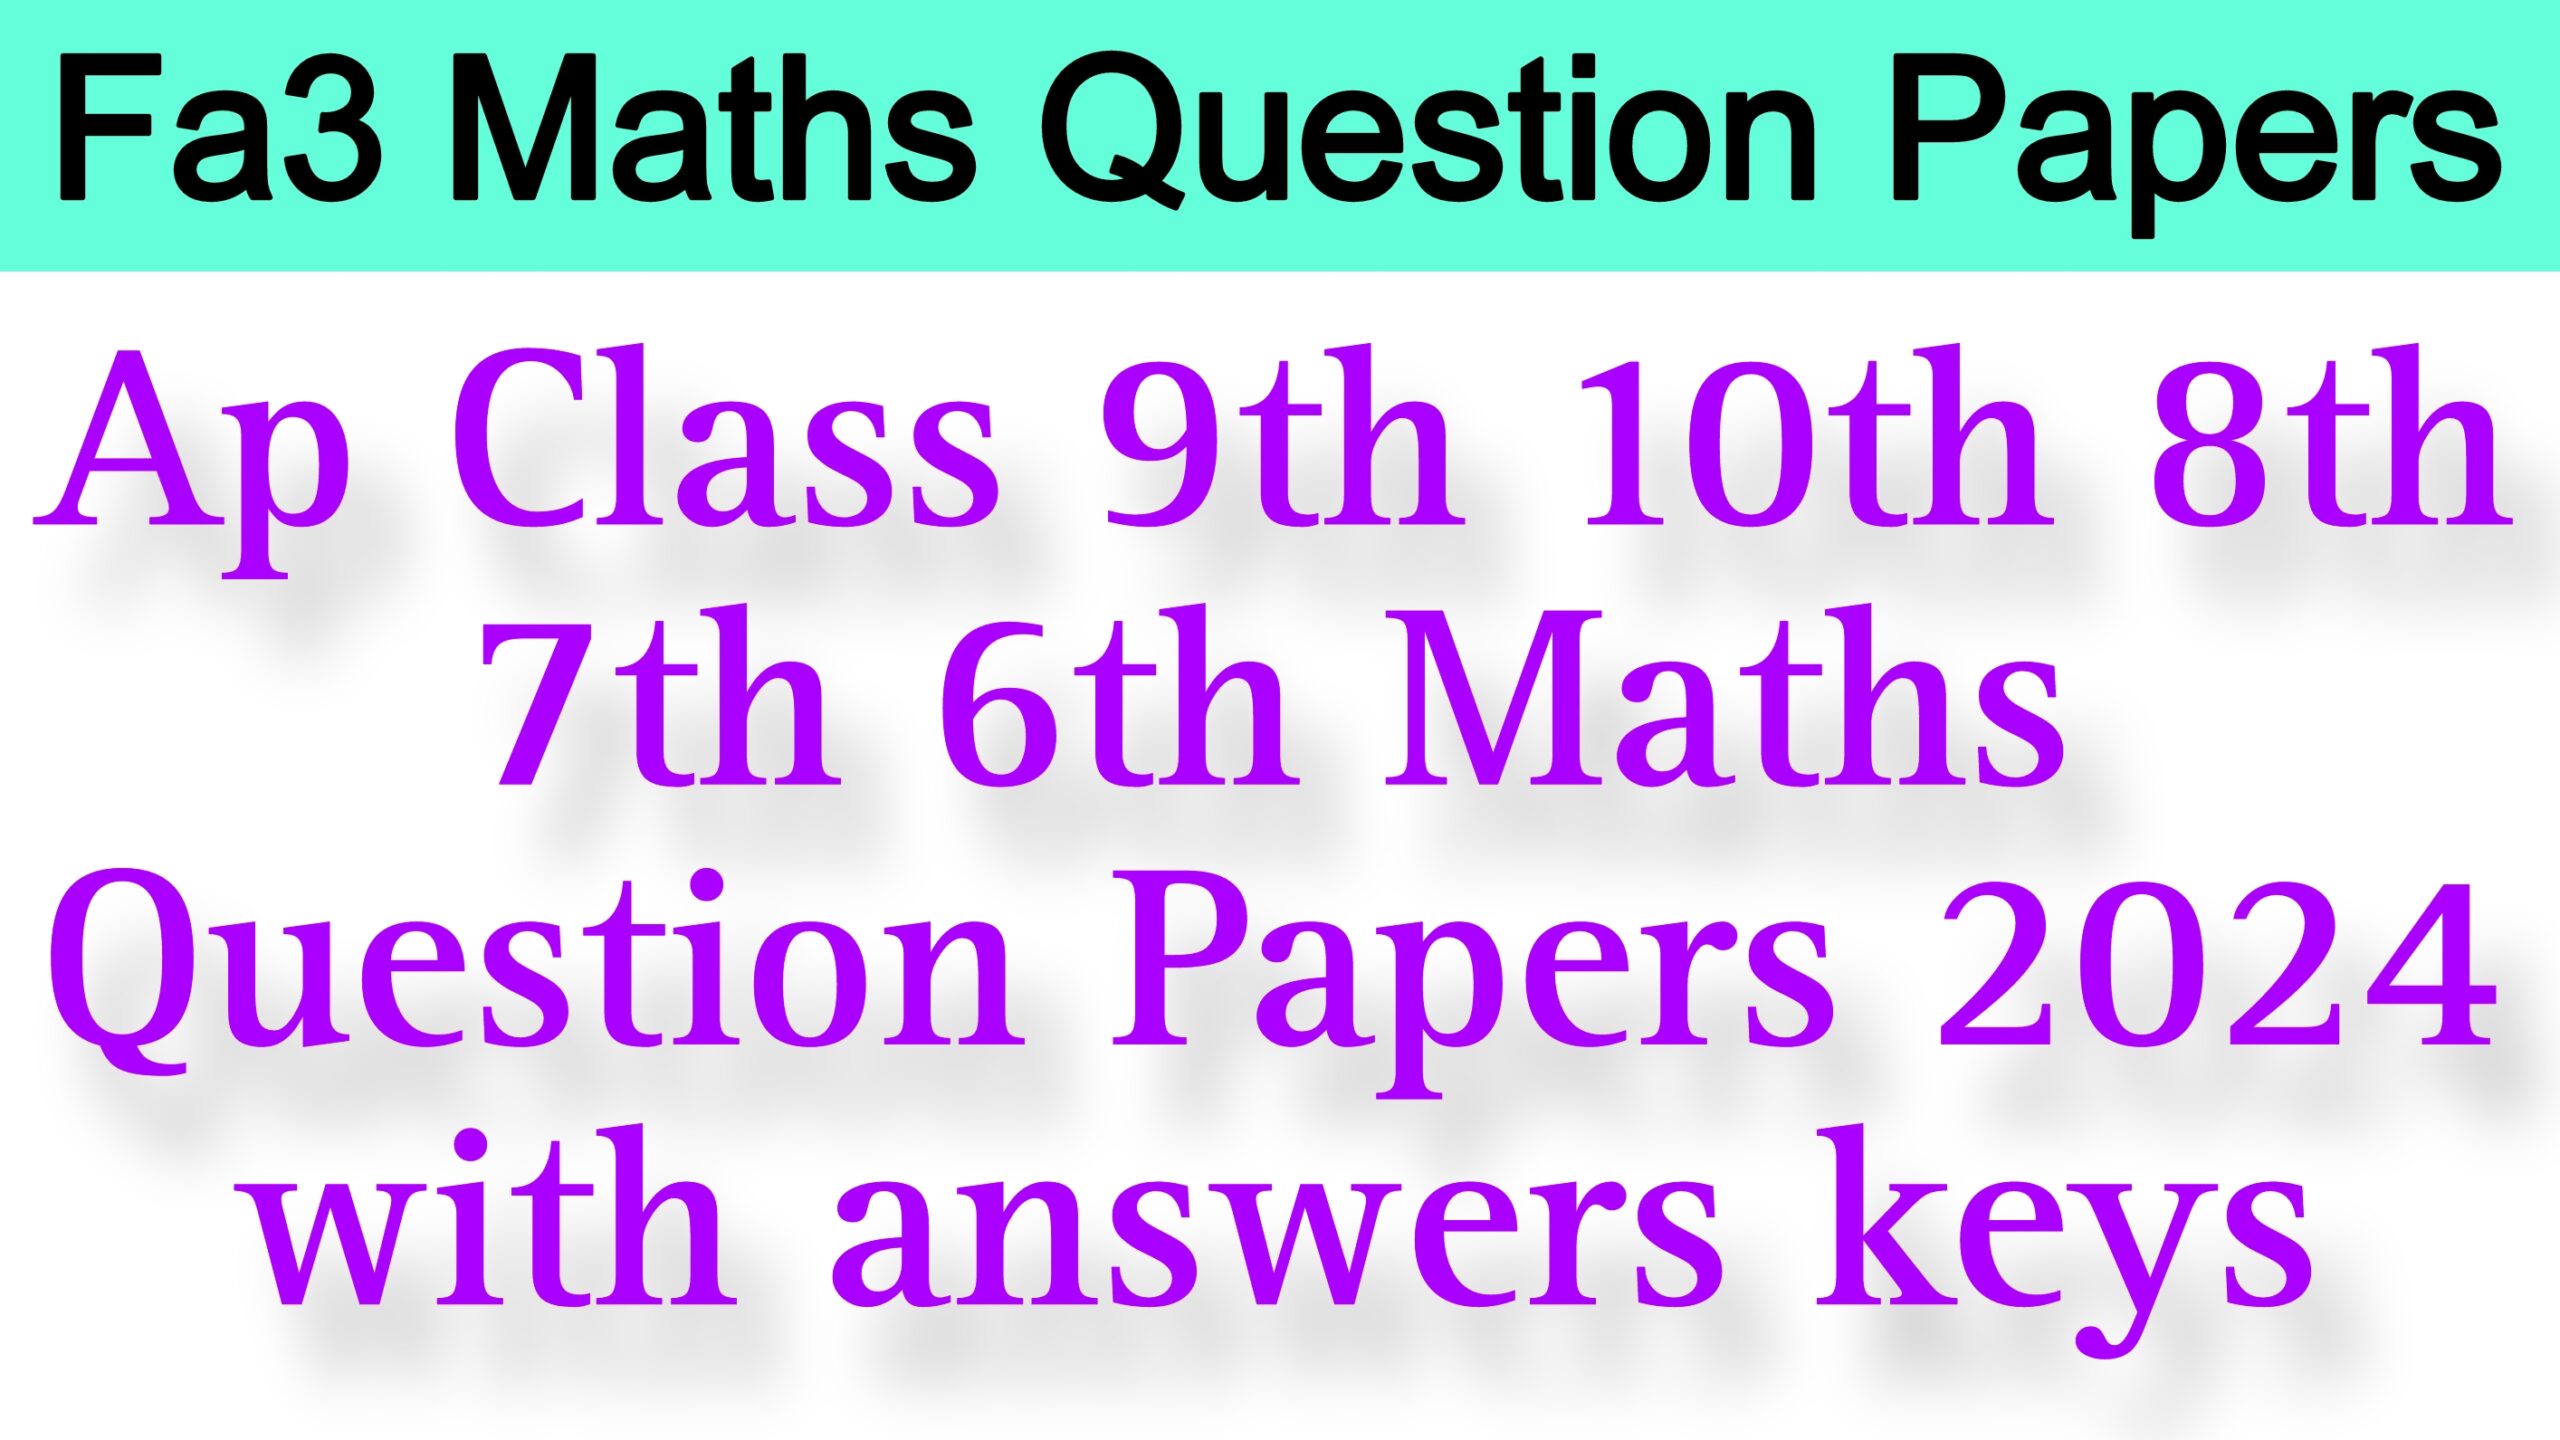 Fa3 Maths Question Paper 2024 Class 9th 10th 8th 7th 6th